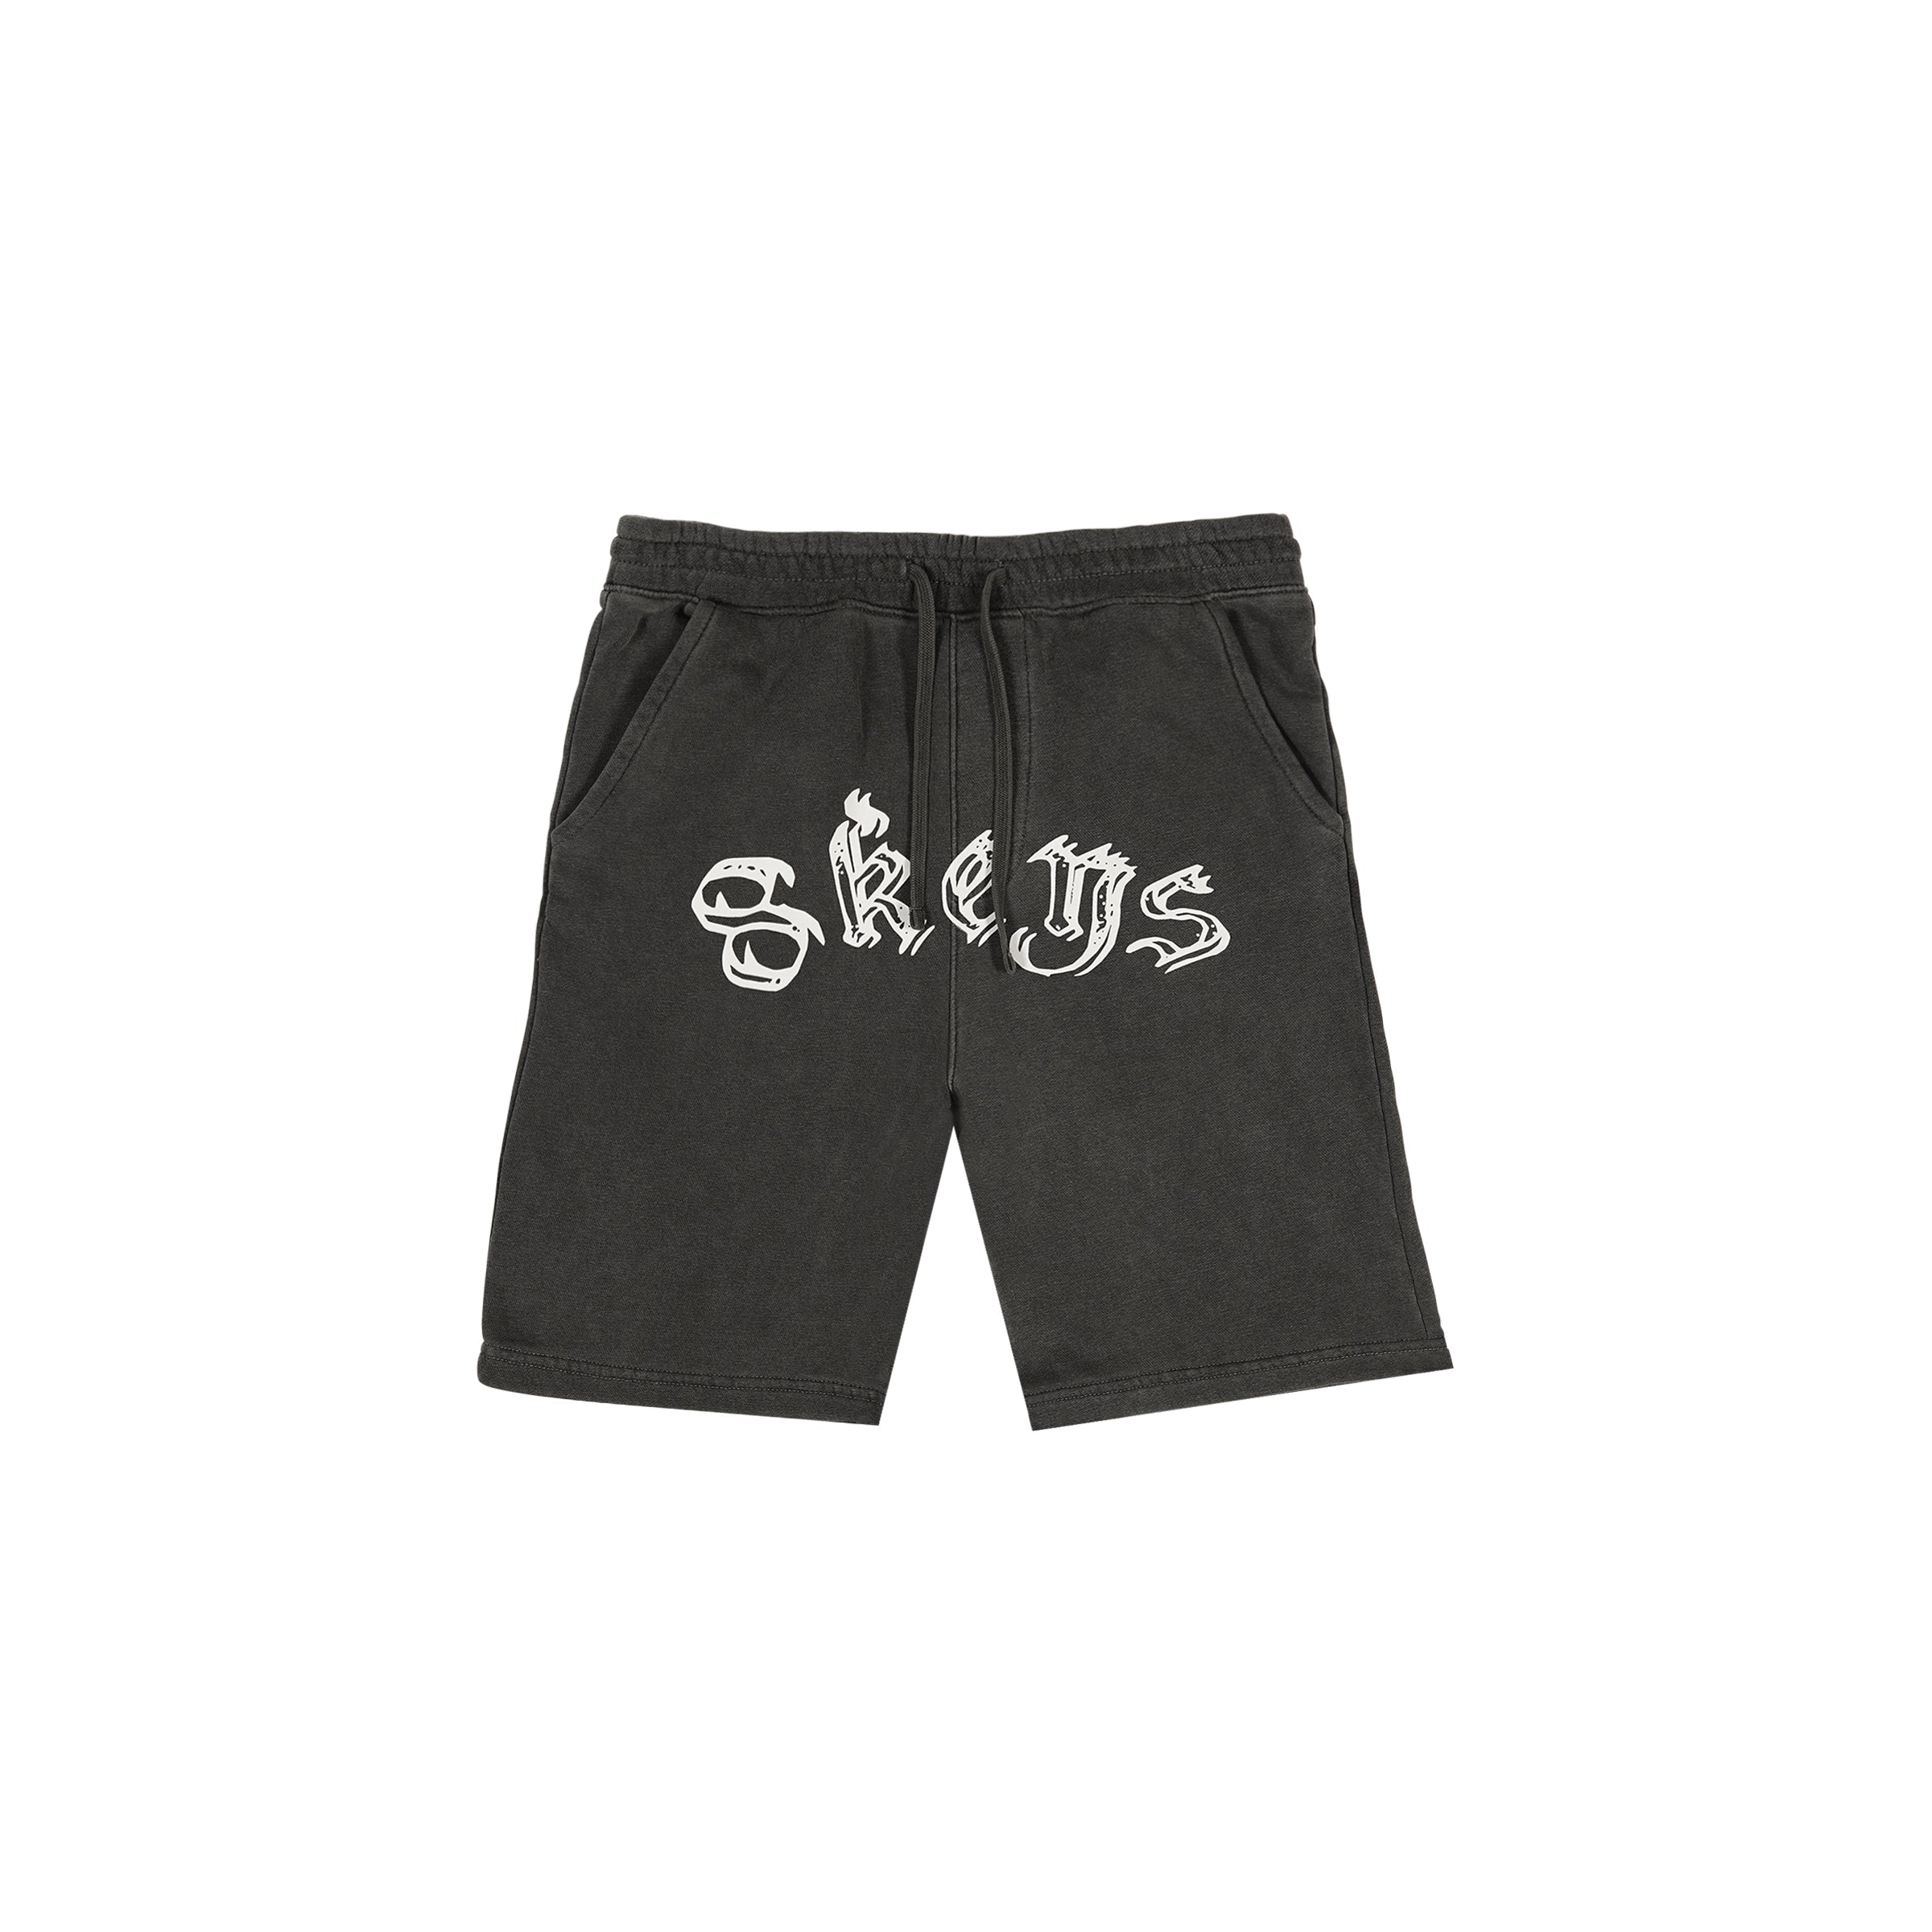 Grey 8keys shorts